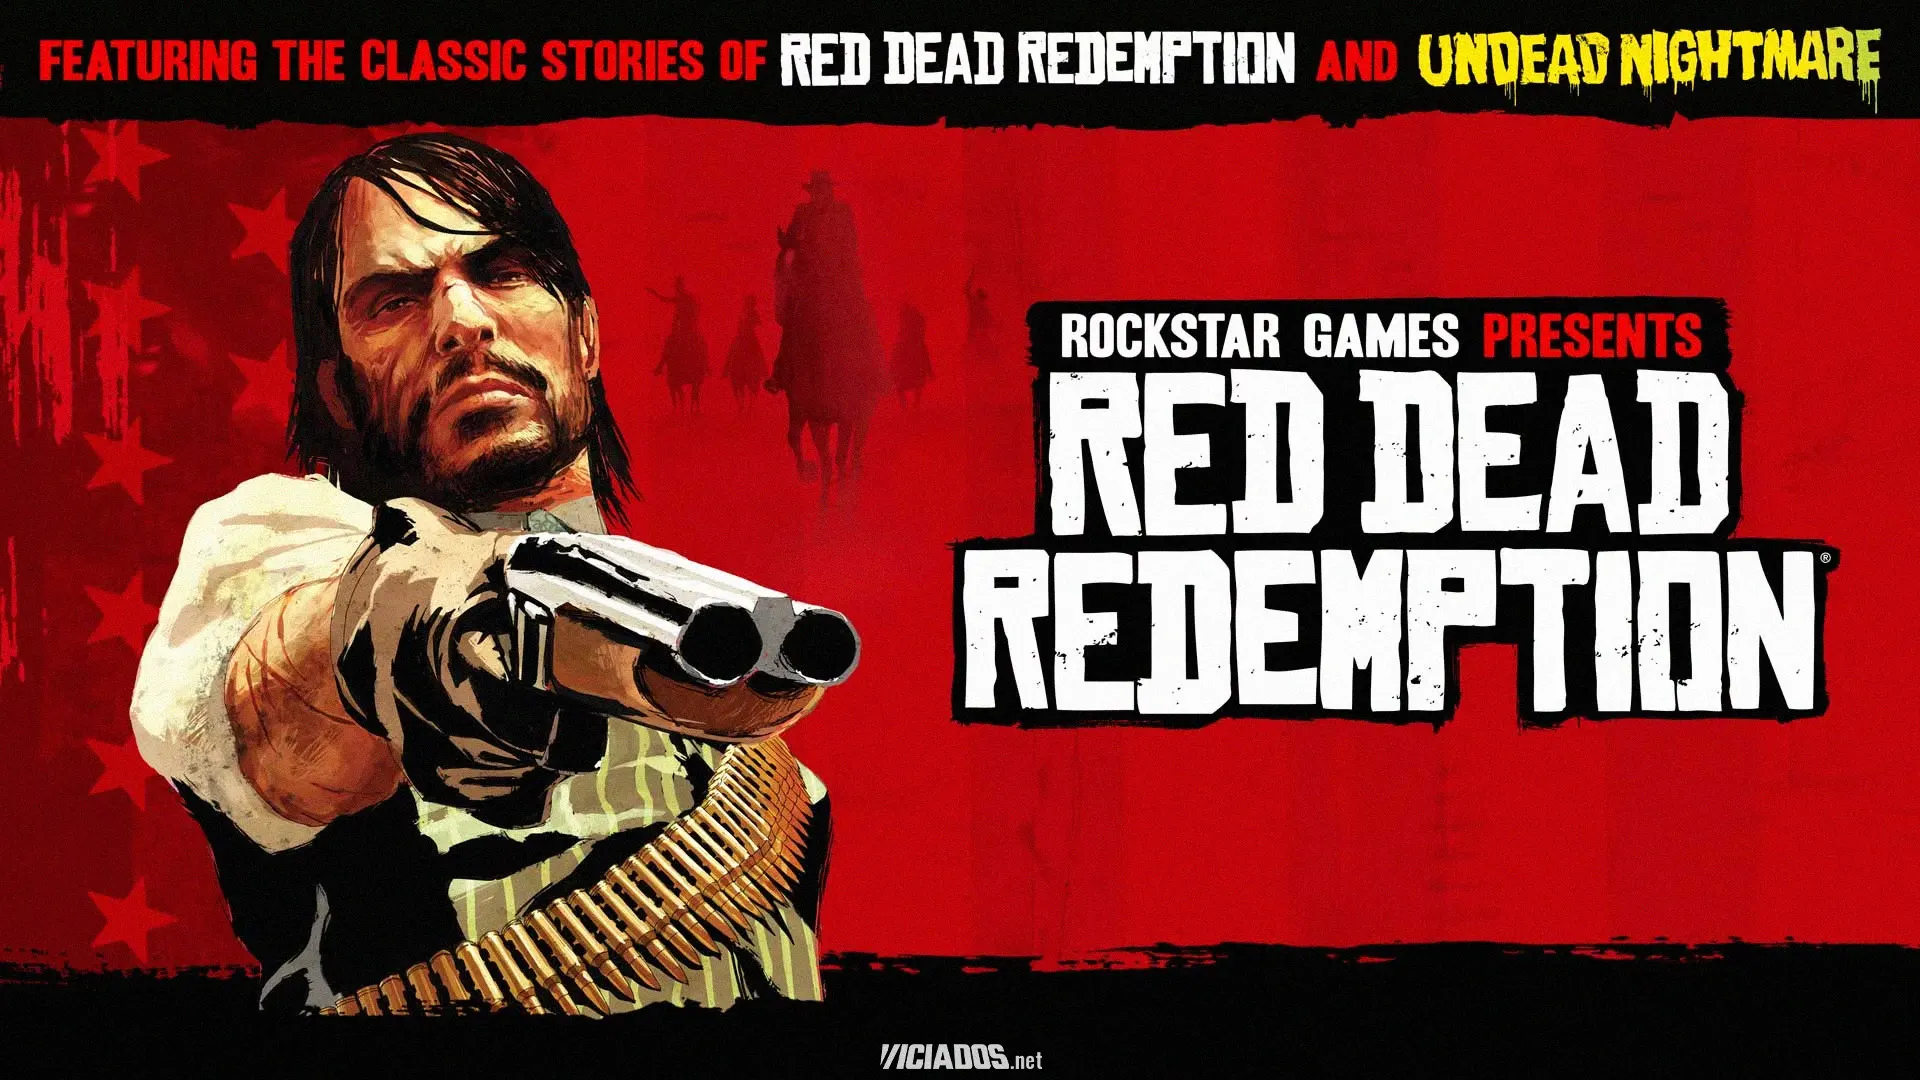 Rockstar Games divulga imagens de Red Dead Redemption 1 no Nintendo Switch 2023 Viciados